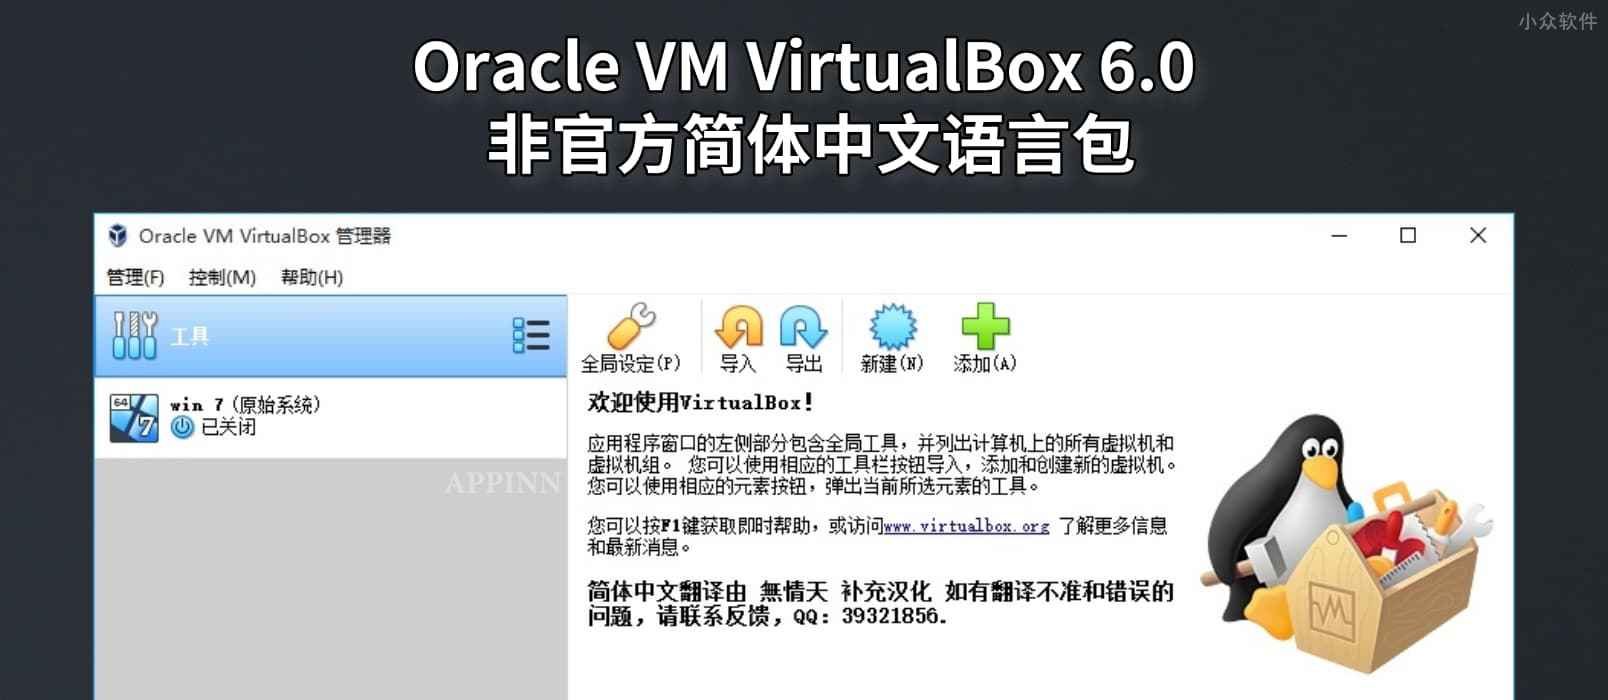 Oracle VM VirtualBox 6.0 非官方简体中文语言包